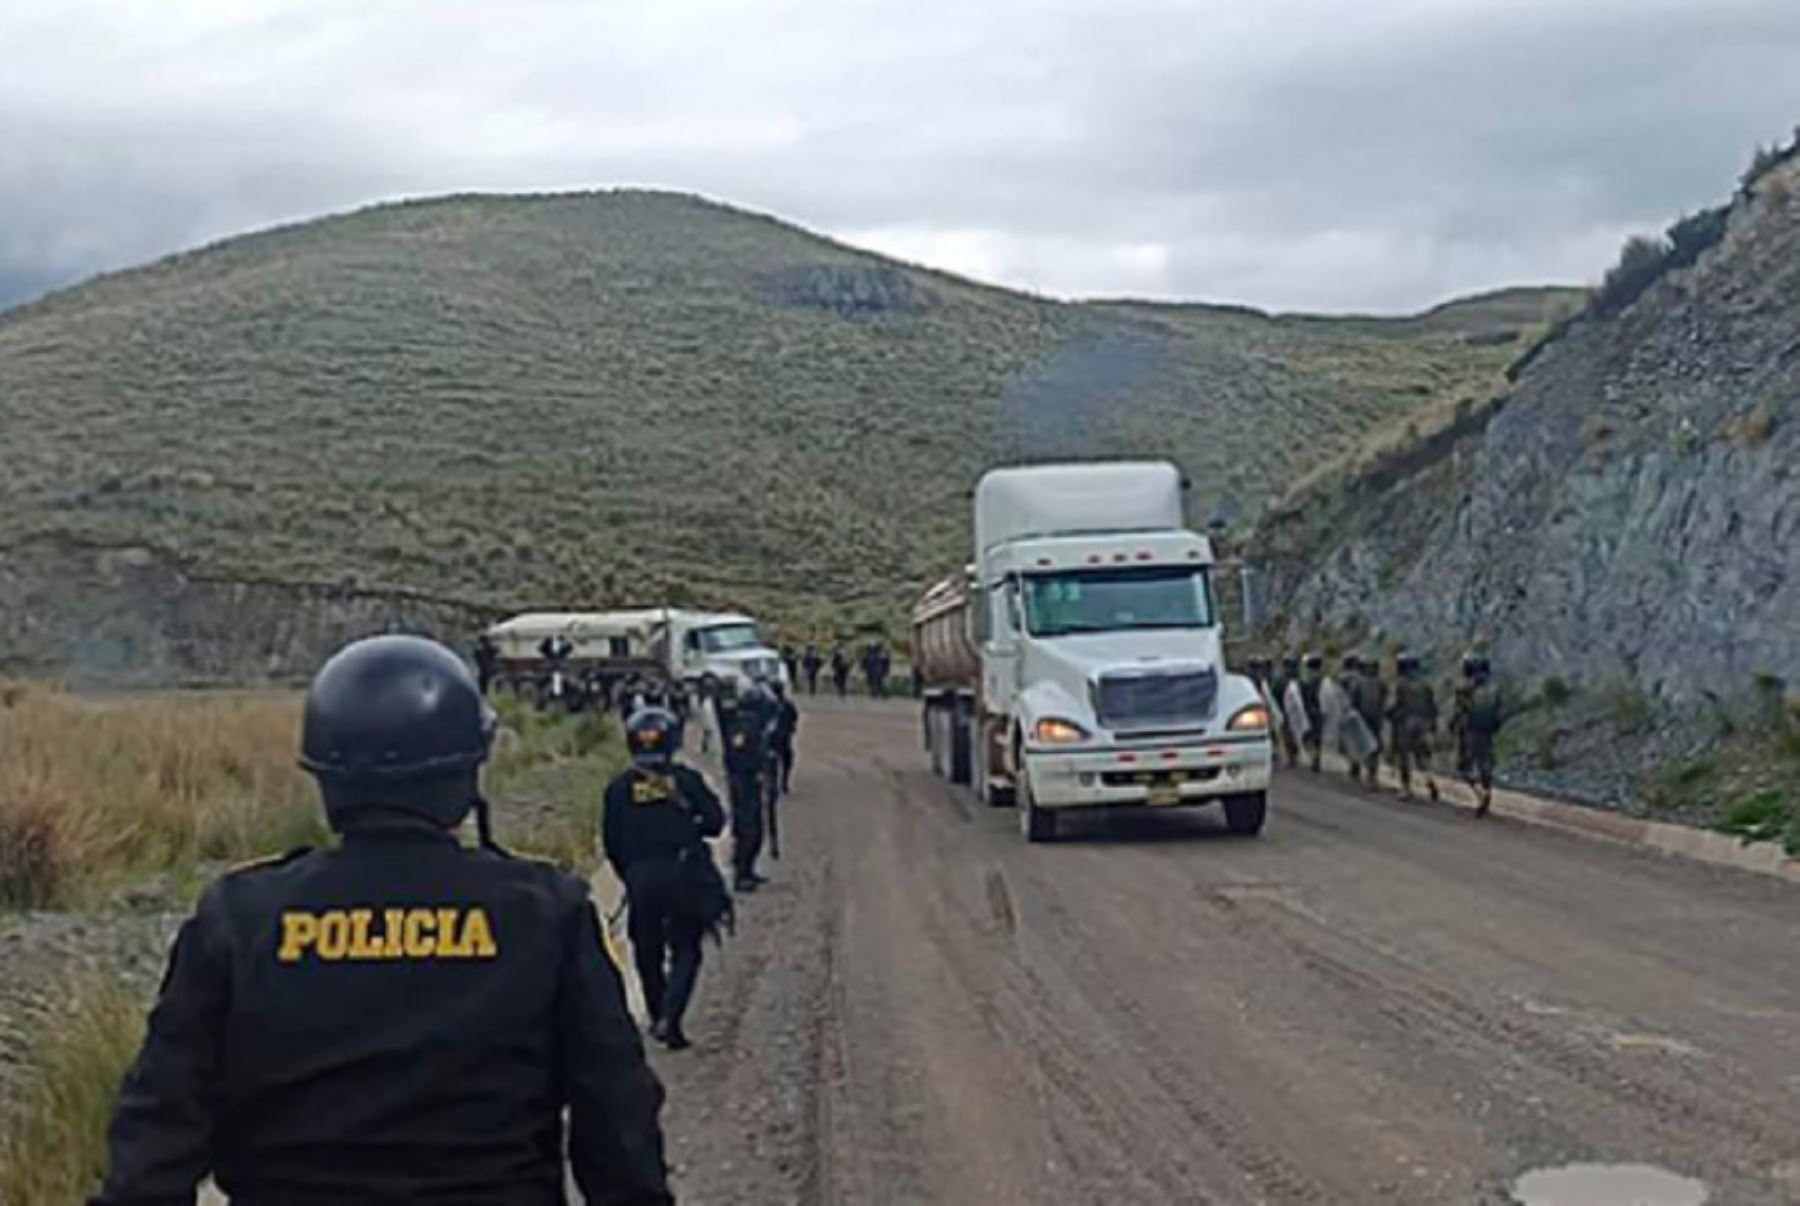 Dos tramos del Corredor Vial Sur Apurímac-Cusco-Arequipa fueron desbloqueados por personal de la Policía Nacional del Perú (PNP), con apoyo del Ejército, permitiendo el libre tránsito de vehículos en esta zona del país y contribuyendo a garantizar el orden público.